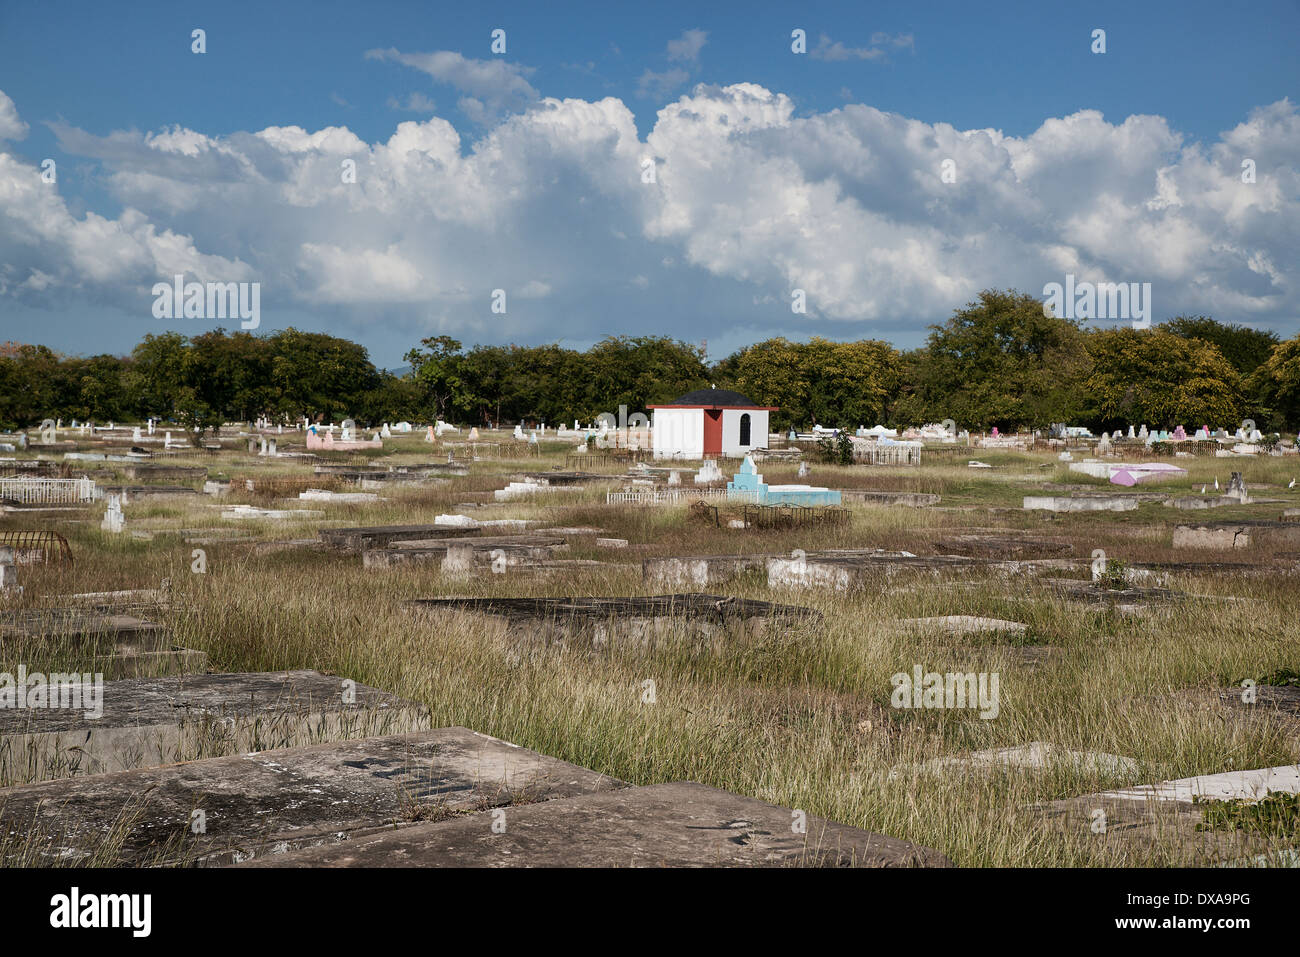 El cementerio de la ciudad de Sabana de La Mar, Jamaica Foto de stock